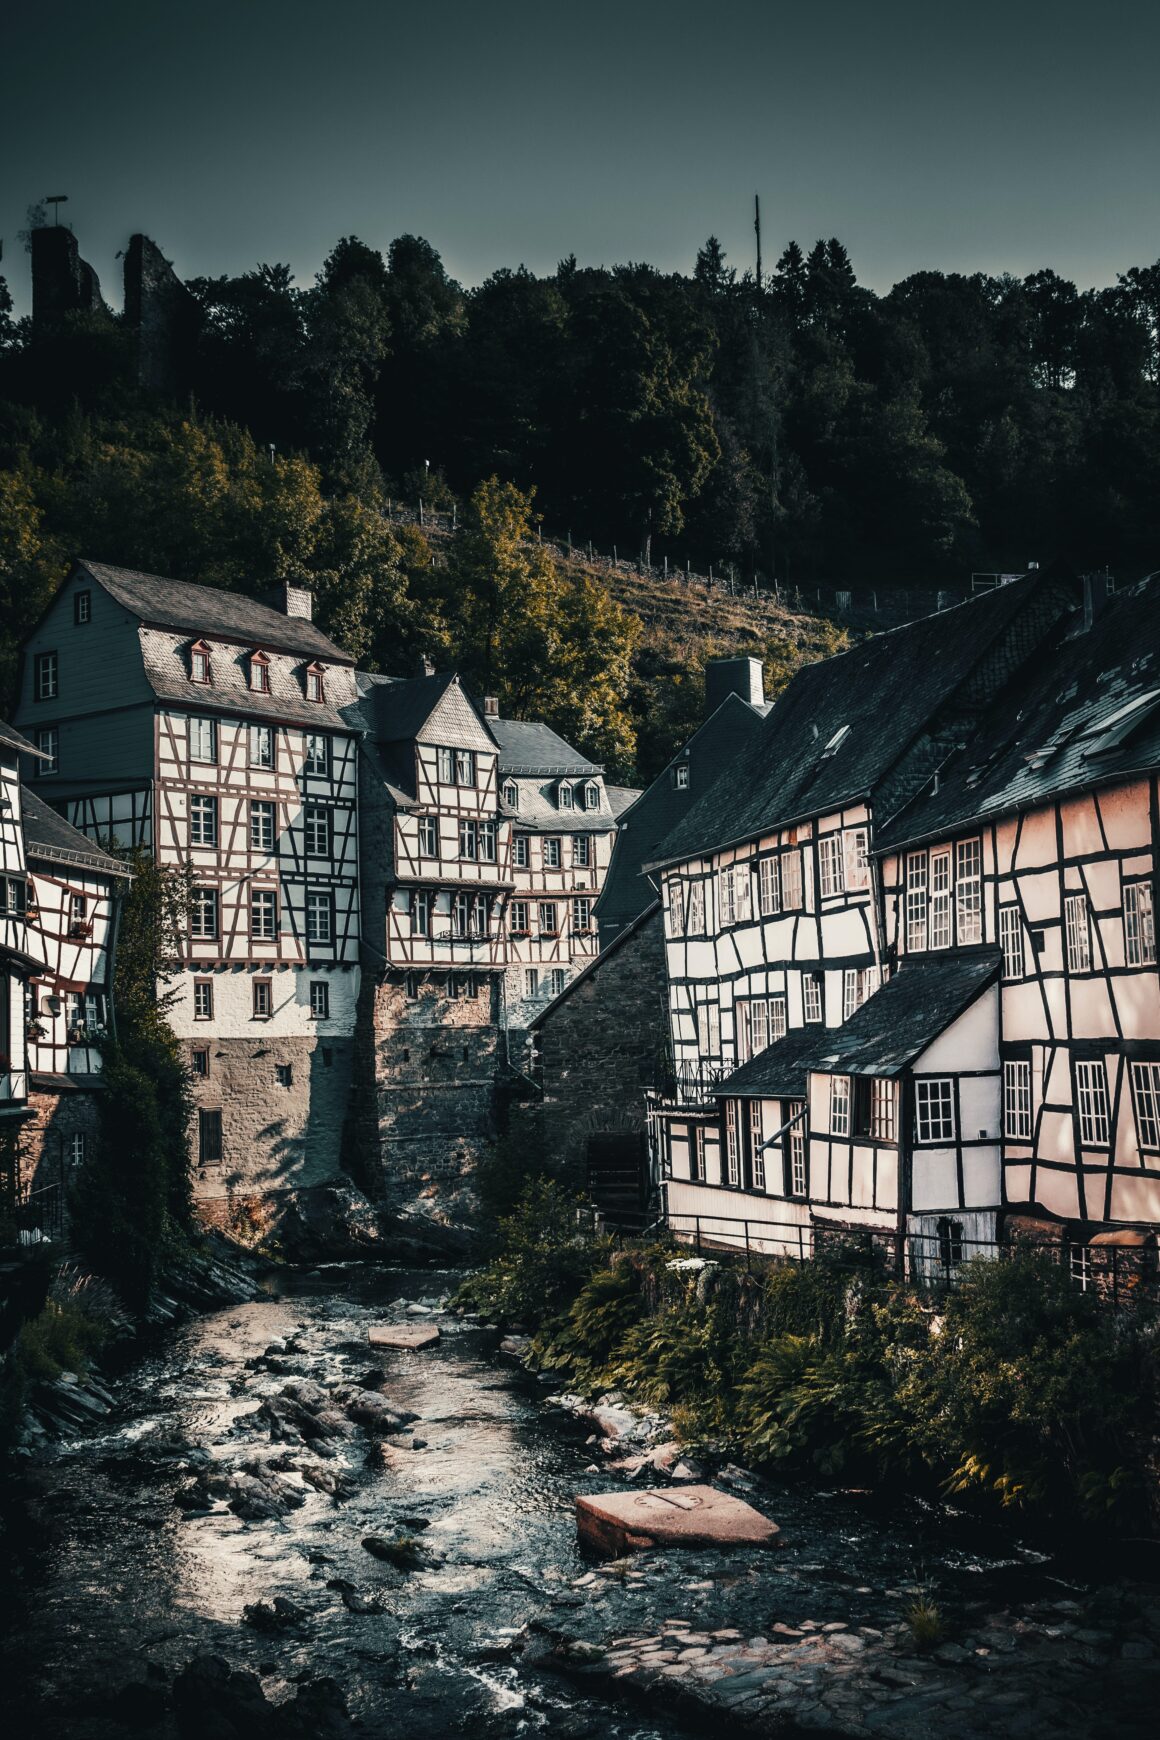 Häuser aus der Eifel, mit Fluss dazwischen - mylocalwedding